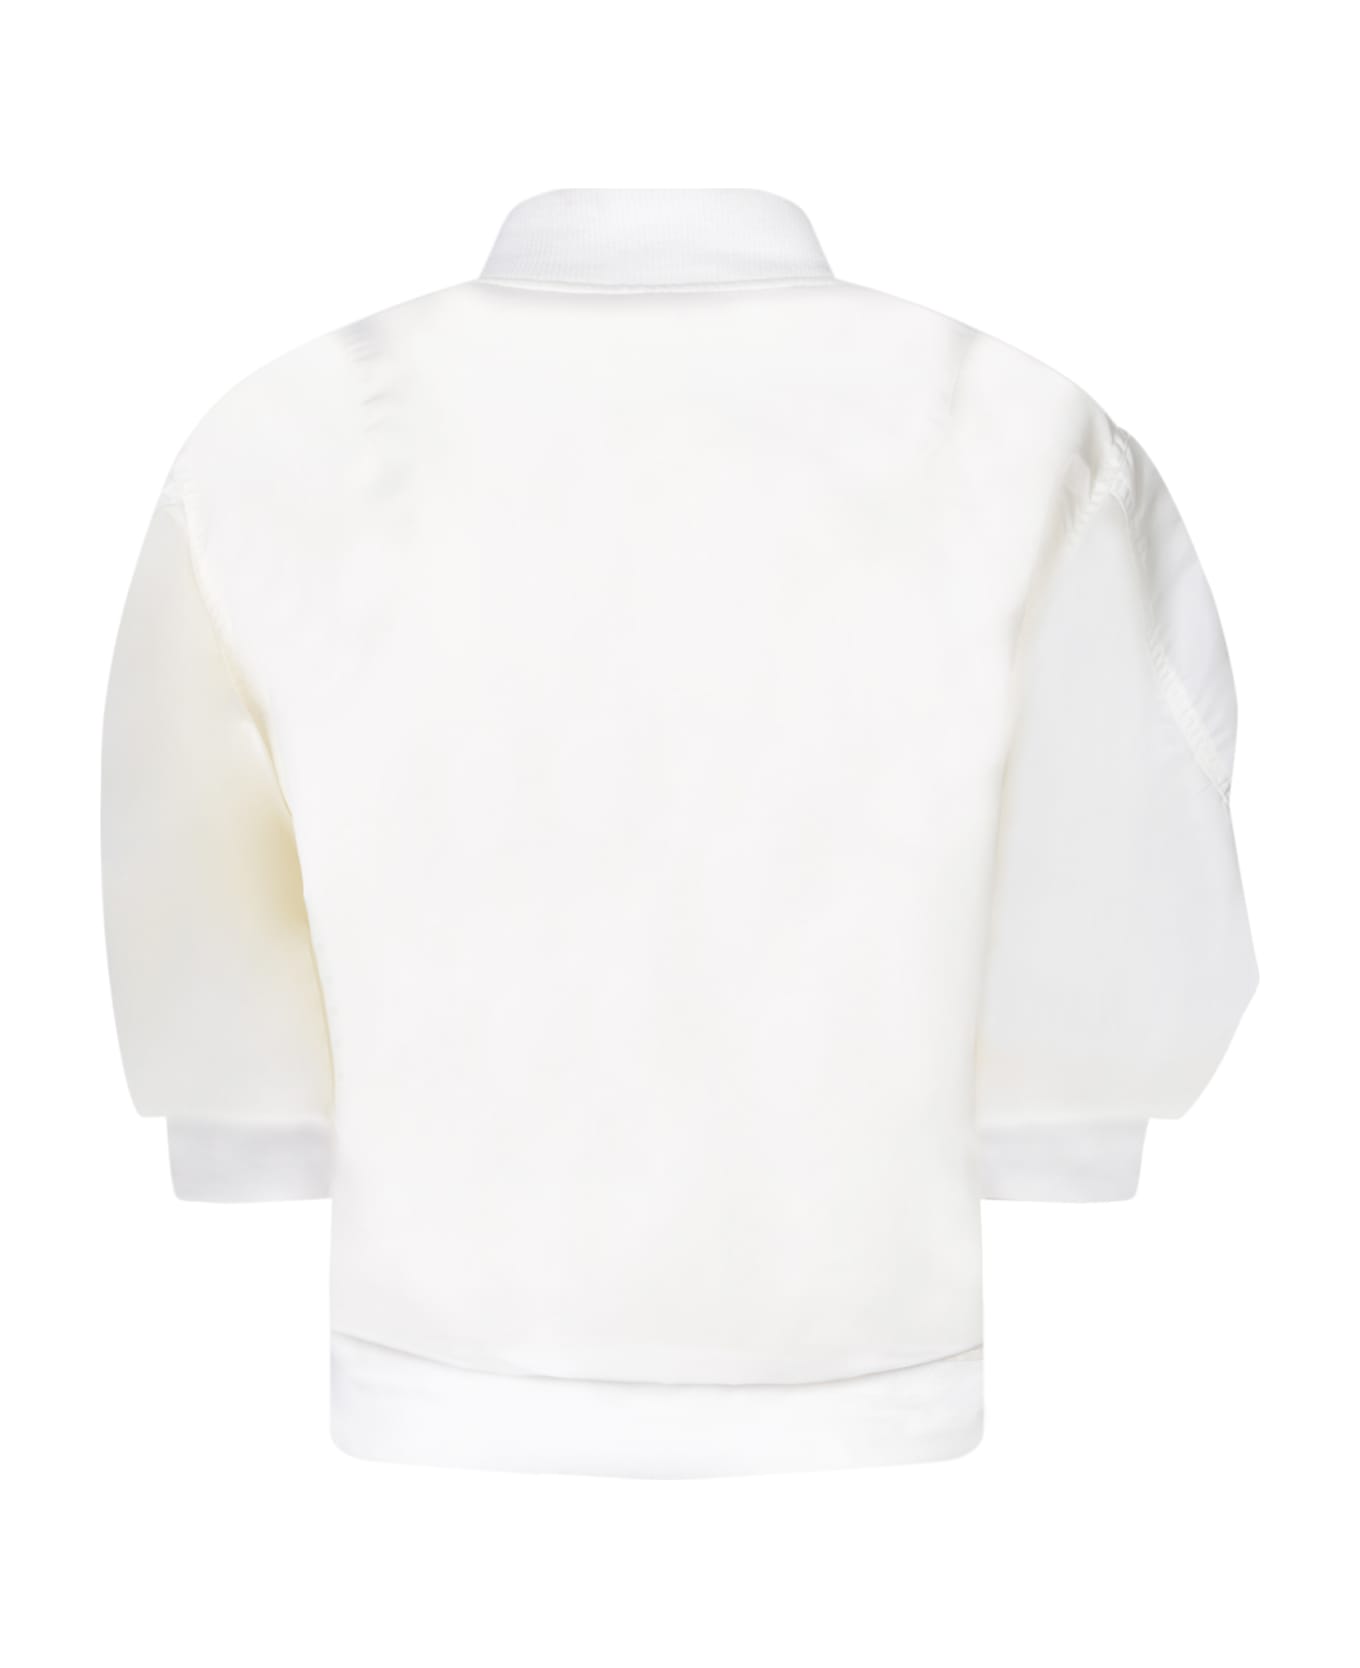 Sacai White Nylon Bomber With Puff Sleeves - White